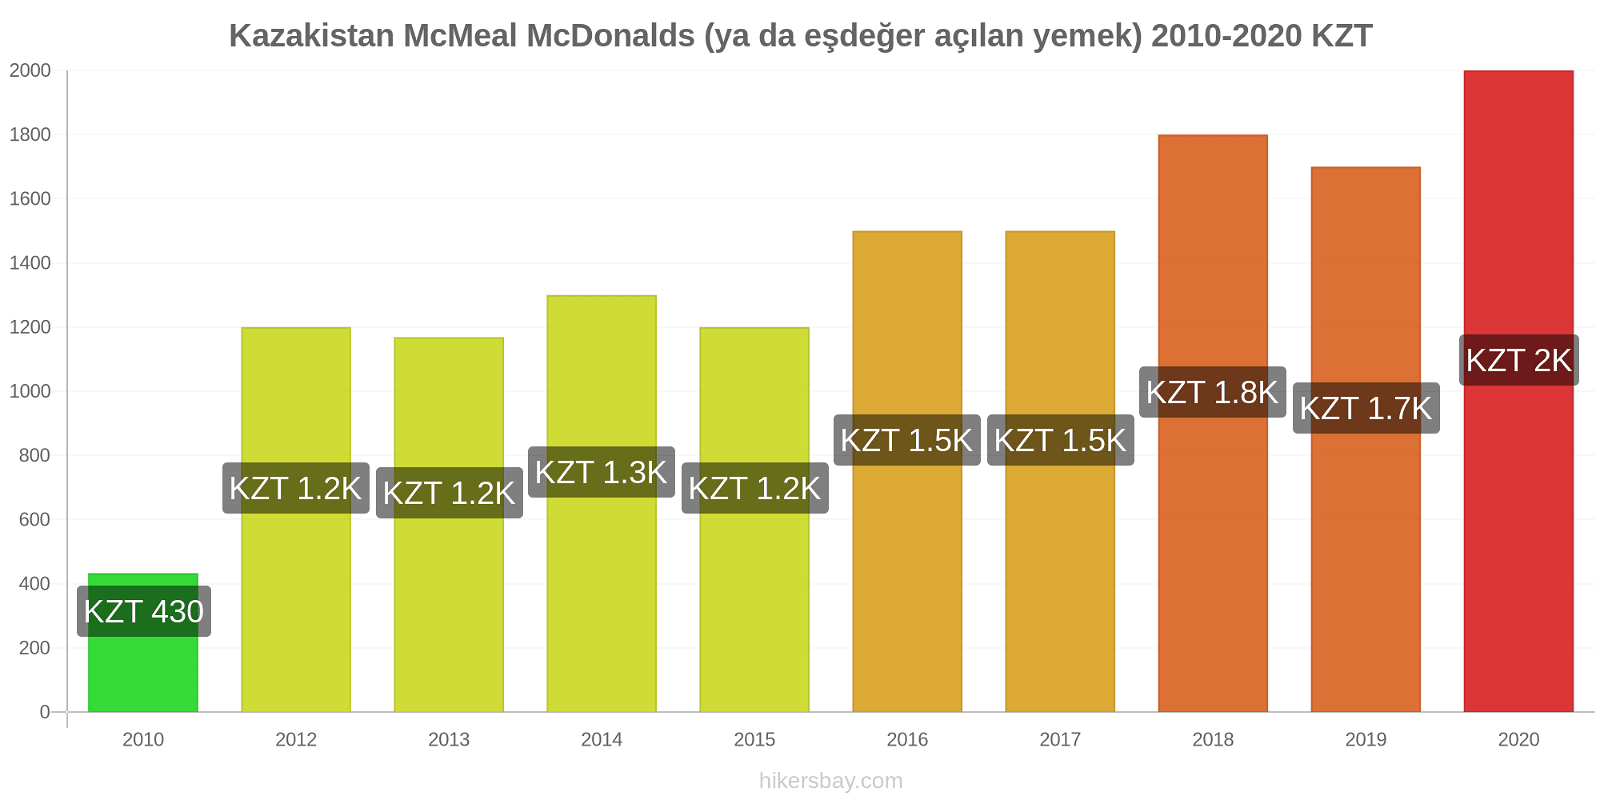 Kazakistan fiyat değişiklikleri McMeal McDonalds (ya da eşdeğer açılan yemek) hikersbay.com